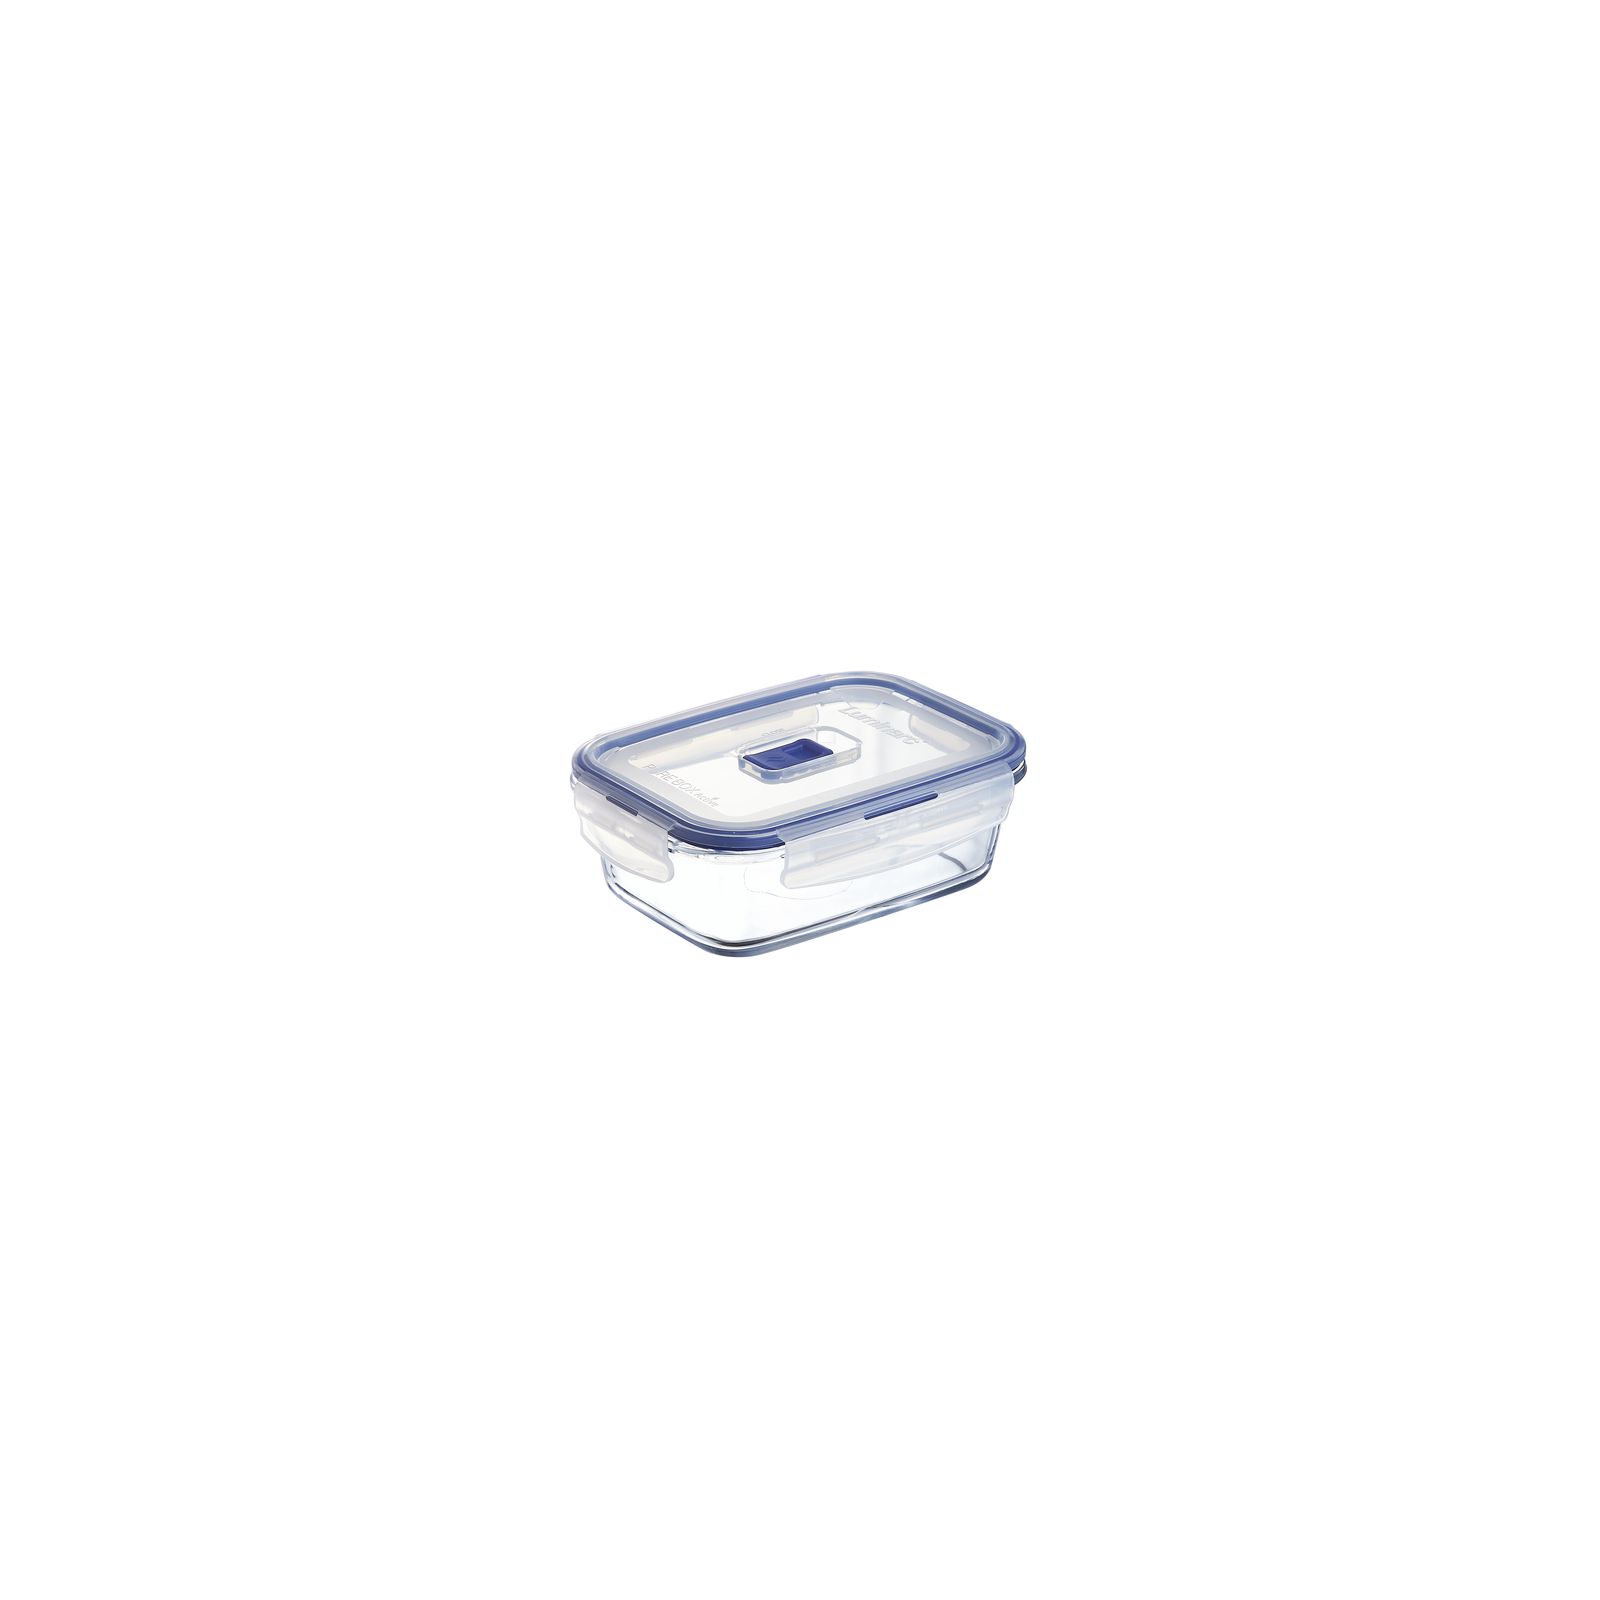 Харчовий контейнер Luminarc Pure Box Active набор 4шт прямоуг. 380мл/820мл/1220мл/1970мл (P5277) зображення 3